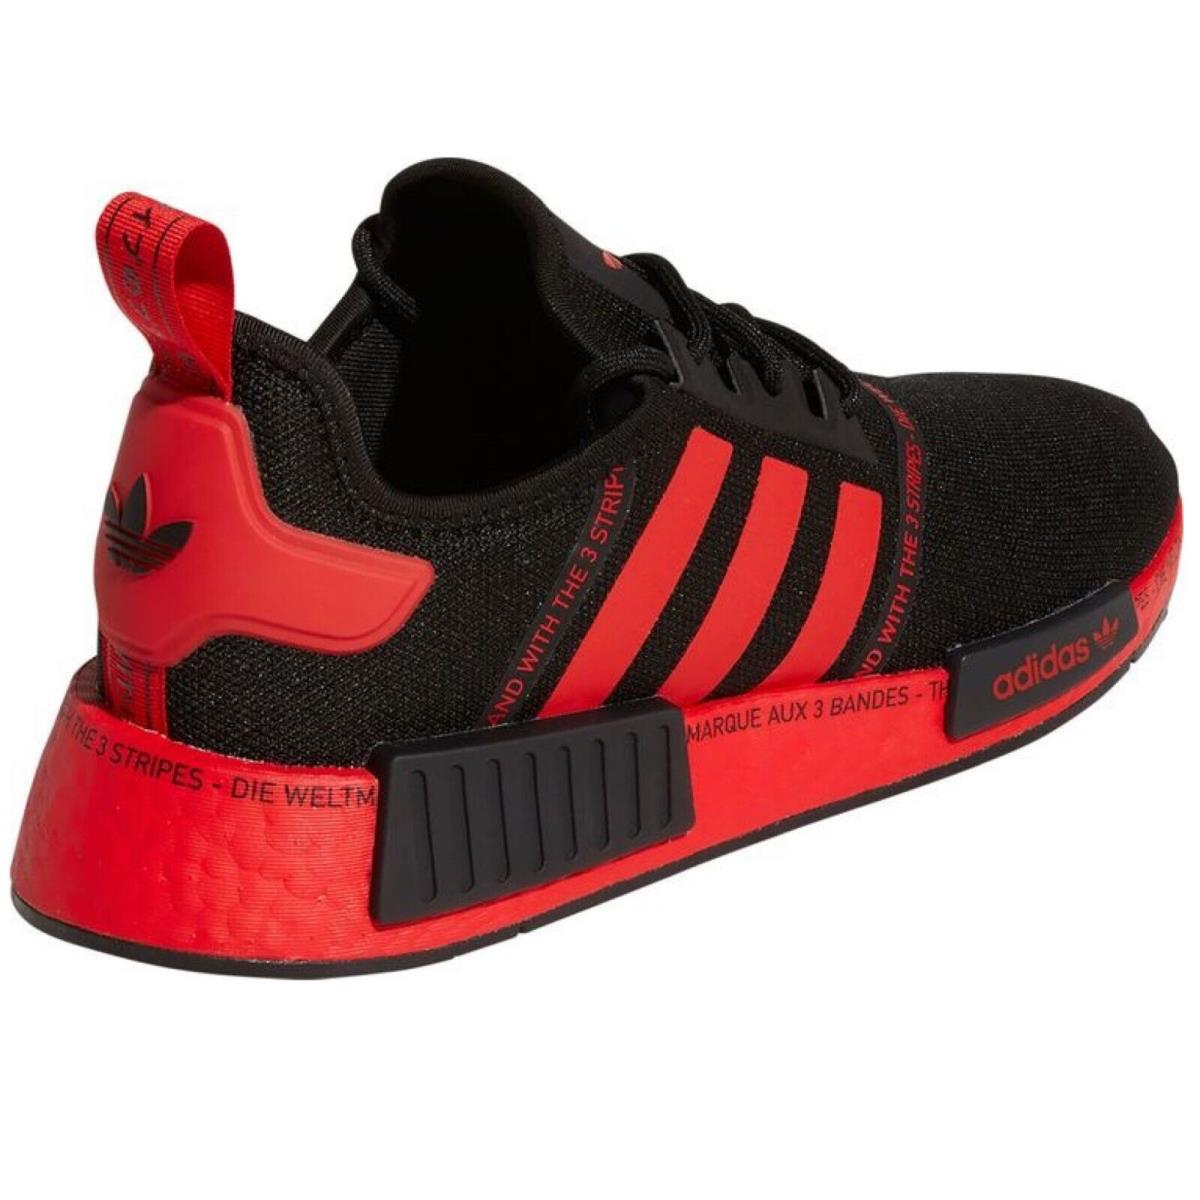 Adidas shoes Originals - Black , BLACK/RED/BLACK Manufacturer 8